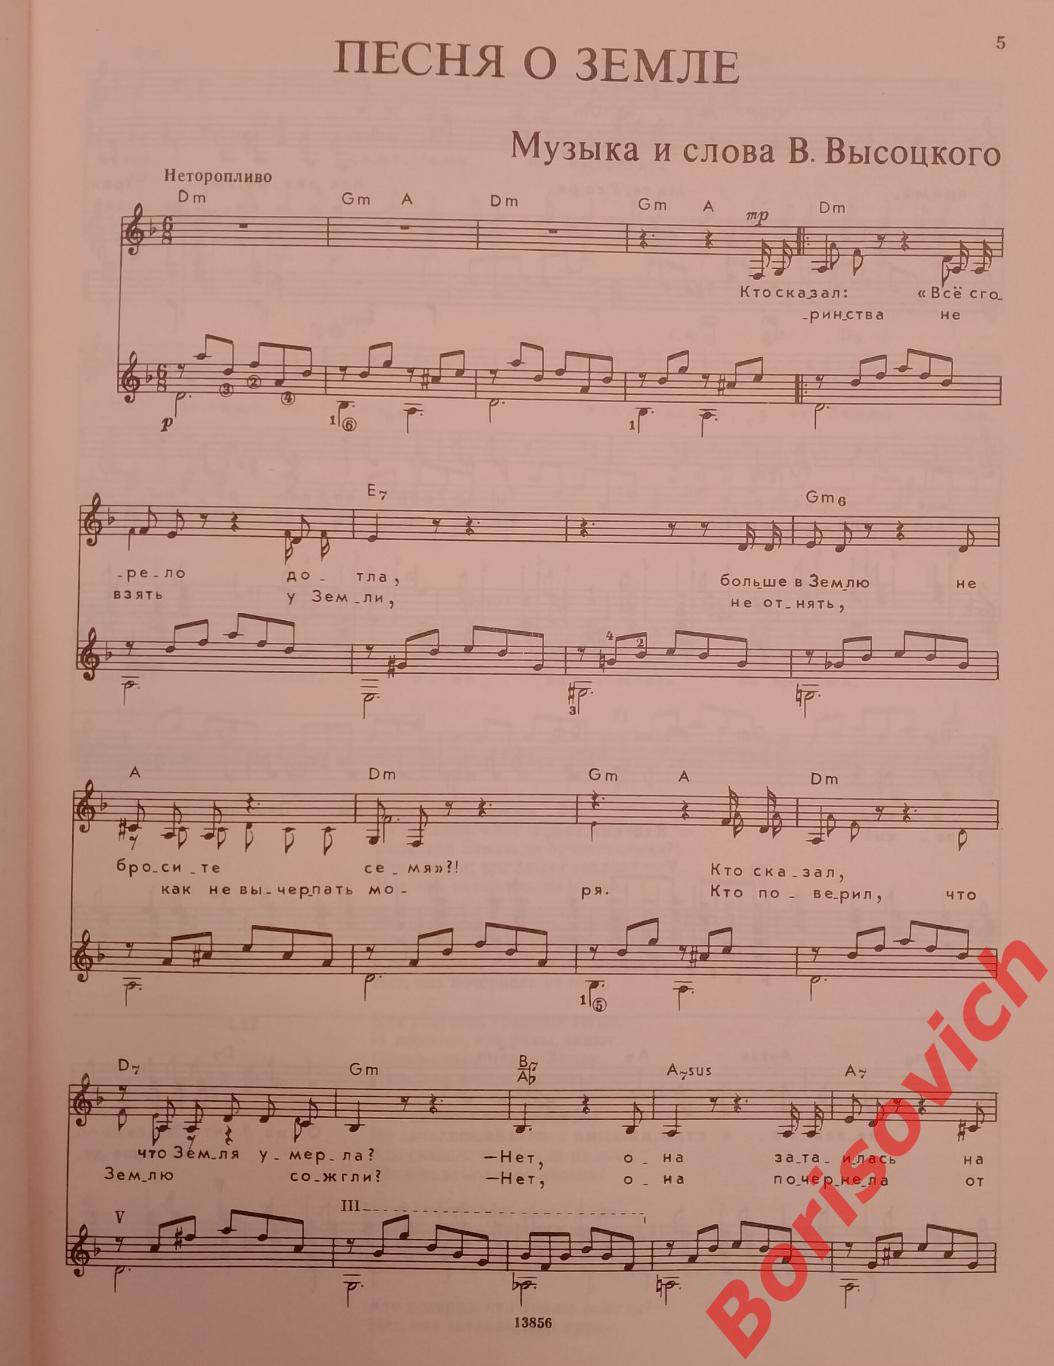 ПОЁТ ВЛАДИМИР ВЫСОЦКИЙ Песни для голоса в сопровождении гитары 1989 г 64 стр. 25 2